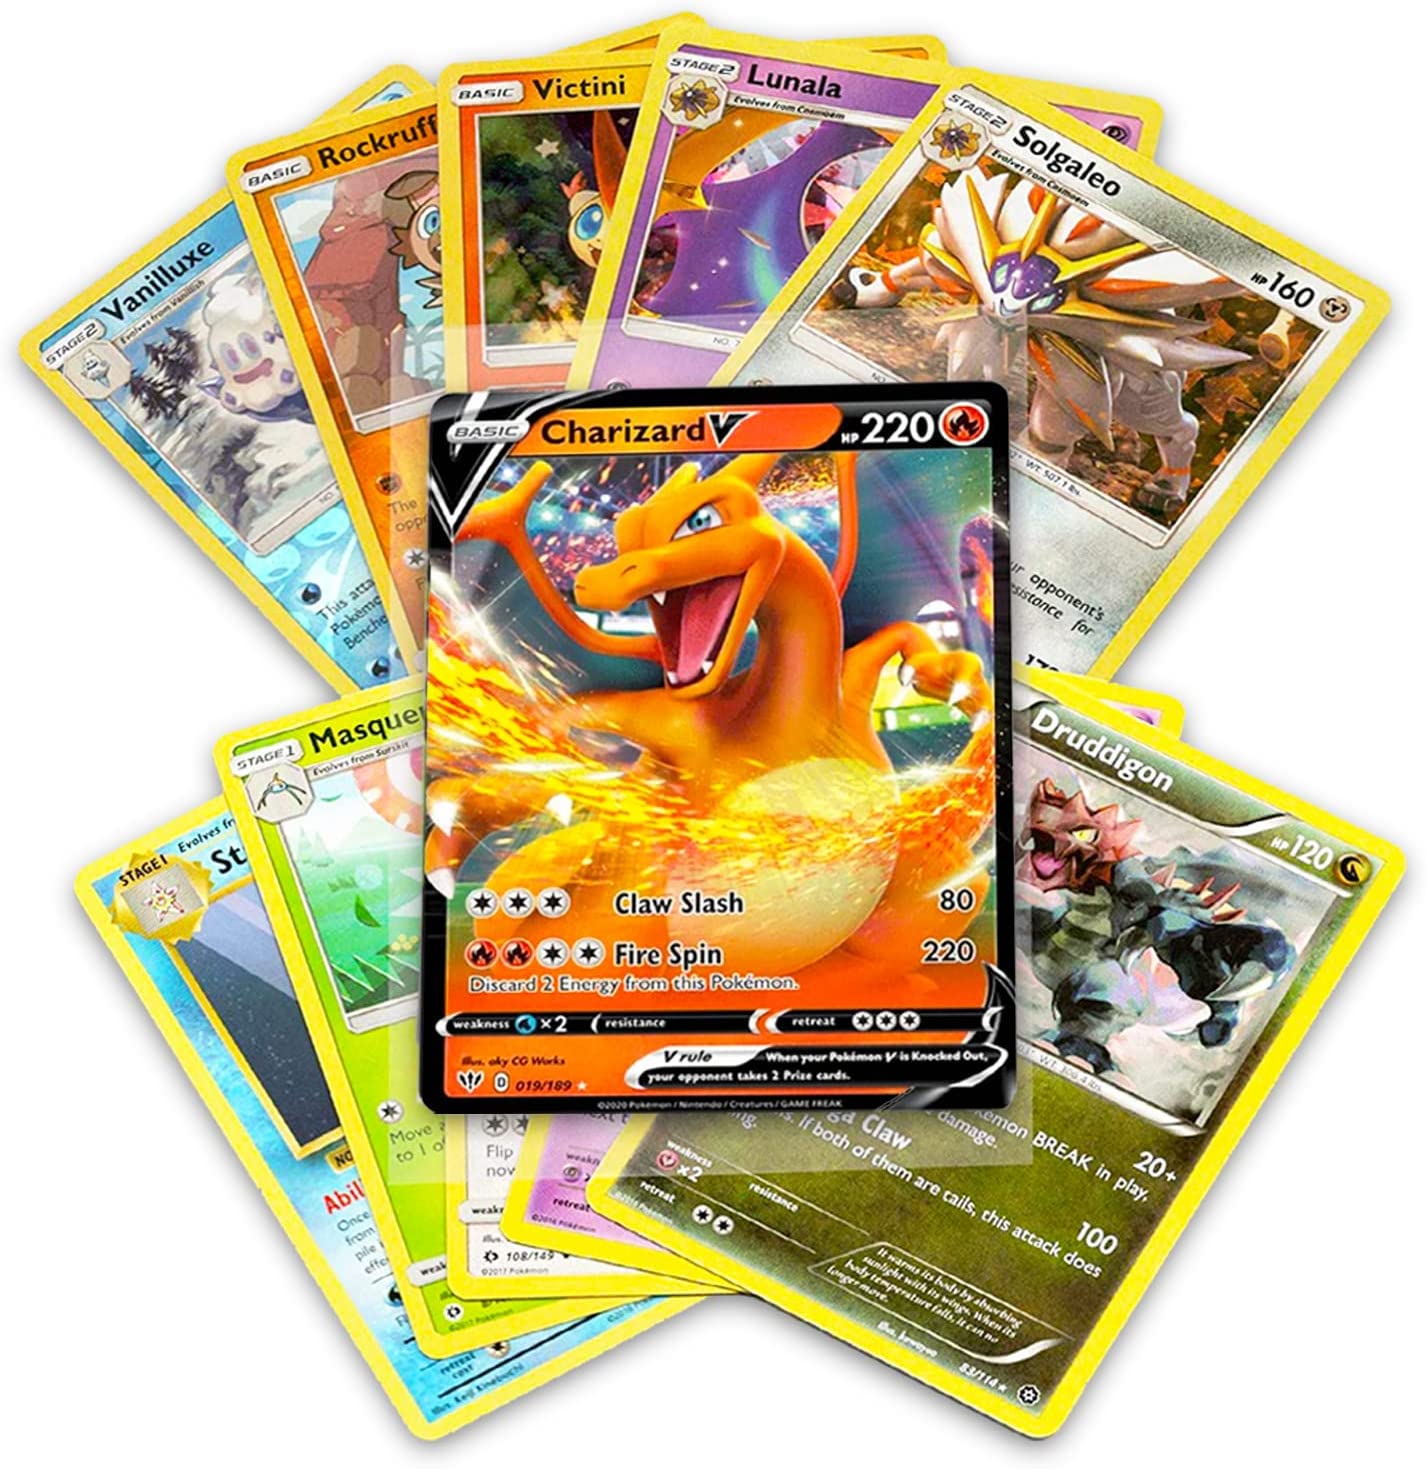  Cartas surtidas de Pokémon, 50 unidades : Juguetes y Juegos